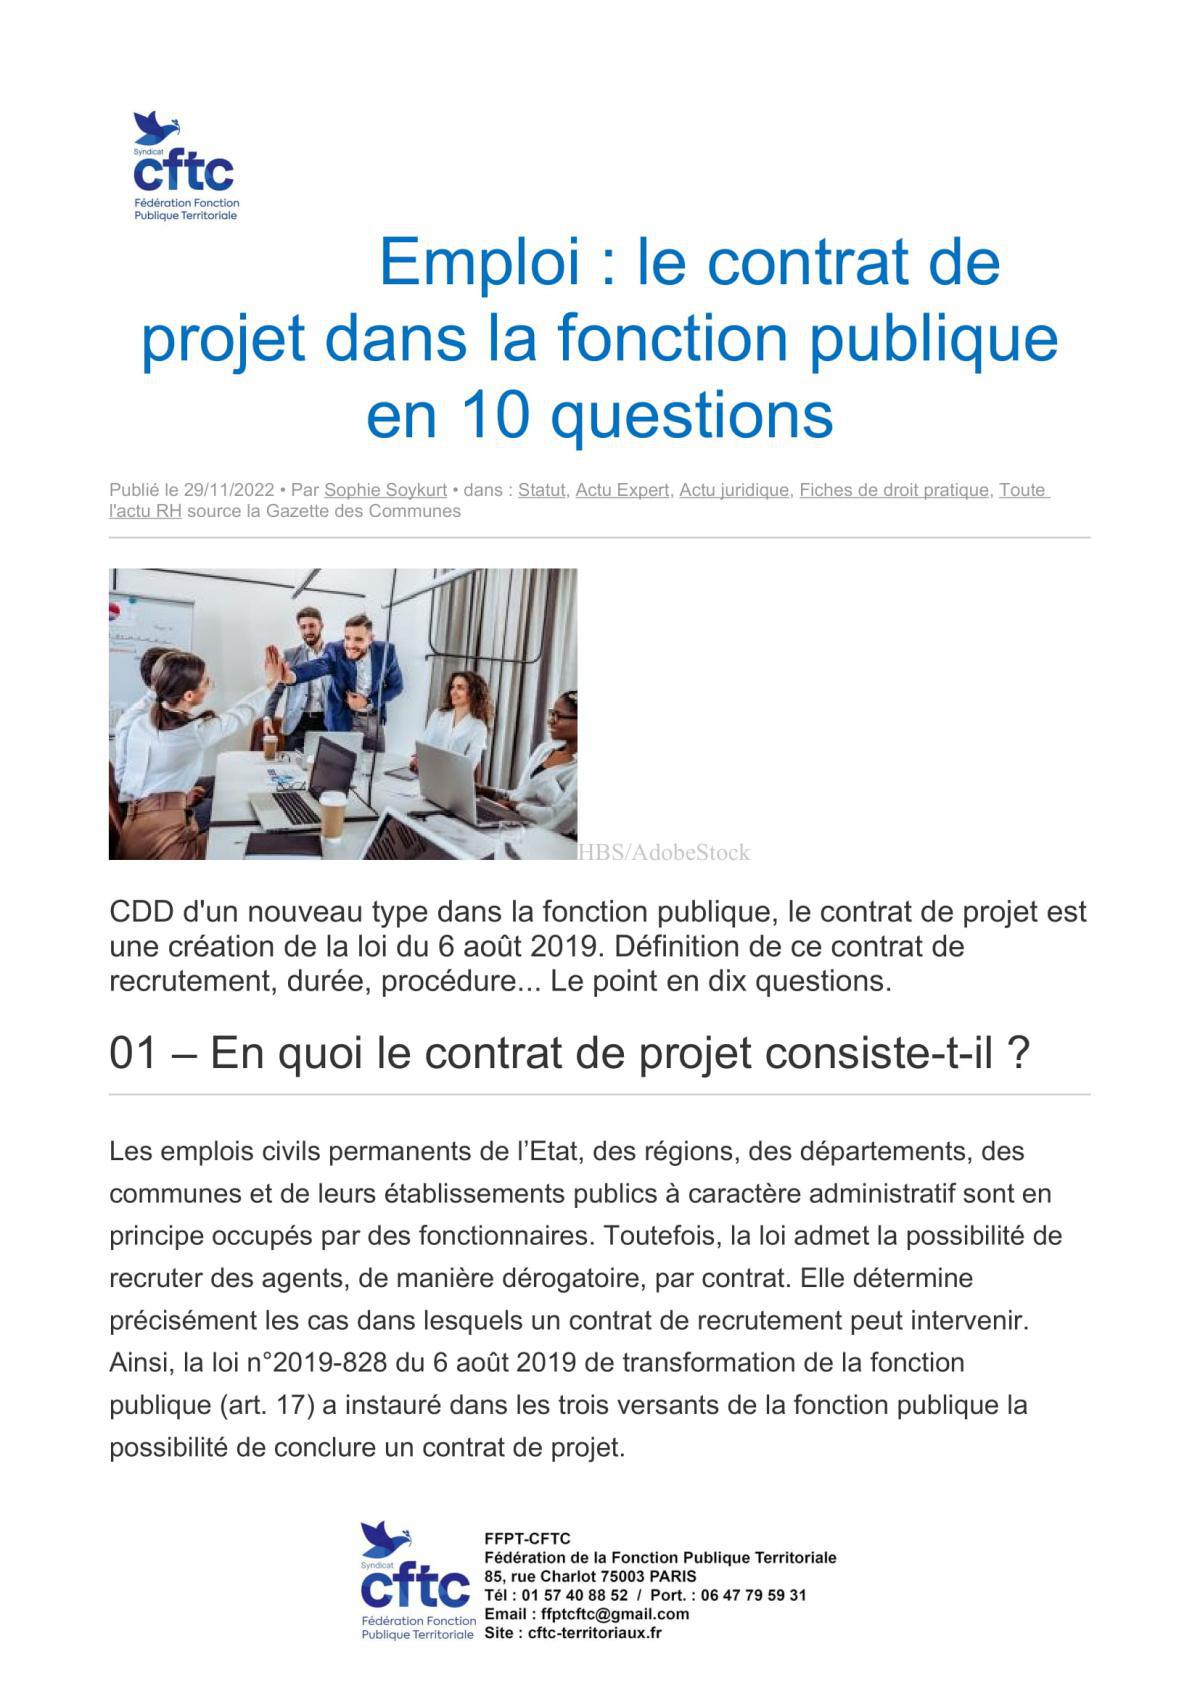 Emploi : le contrat de projet dans la fonction publique en 10 questions